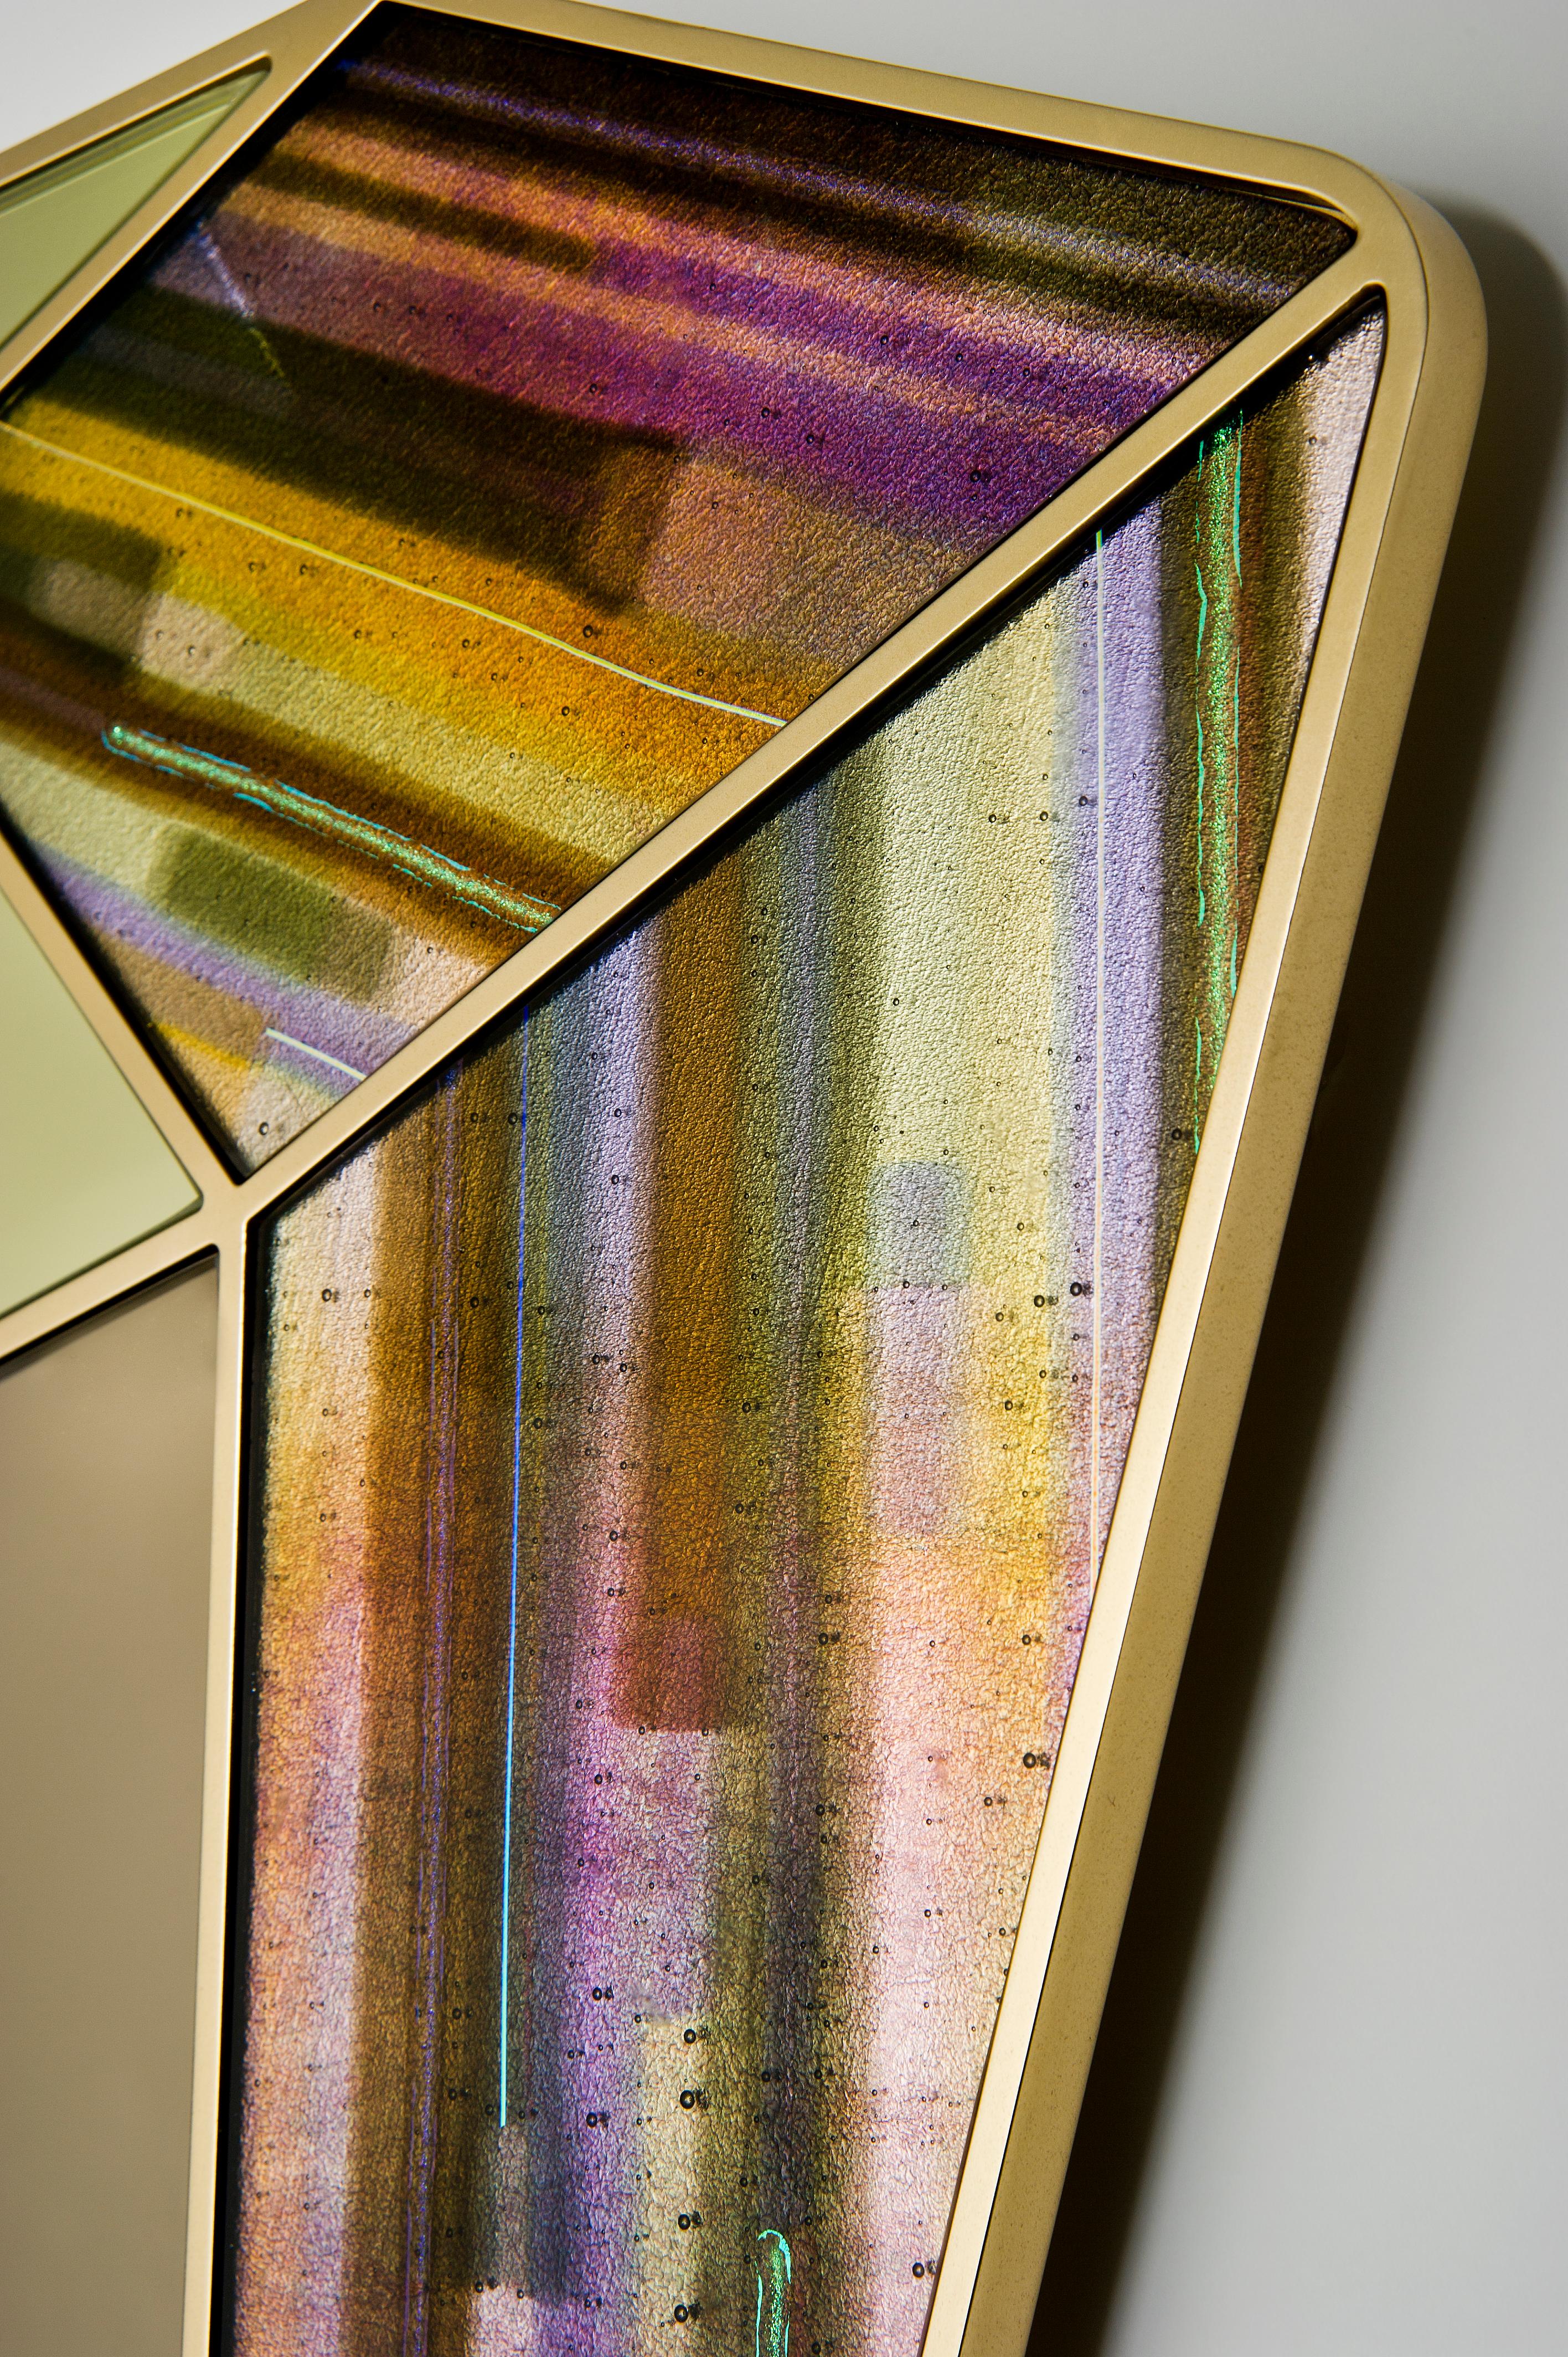 Le miroir Treasure Collection en quartz doré est un miroir unique en verre d'art et en aluminium de la designer et artiste britannique Amy Cushing.

La collection Treasure est une série de miroirs contemporains uniques. Chaque pièce est une